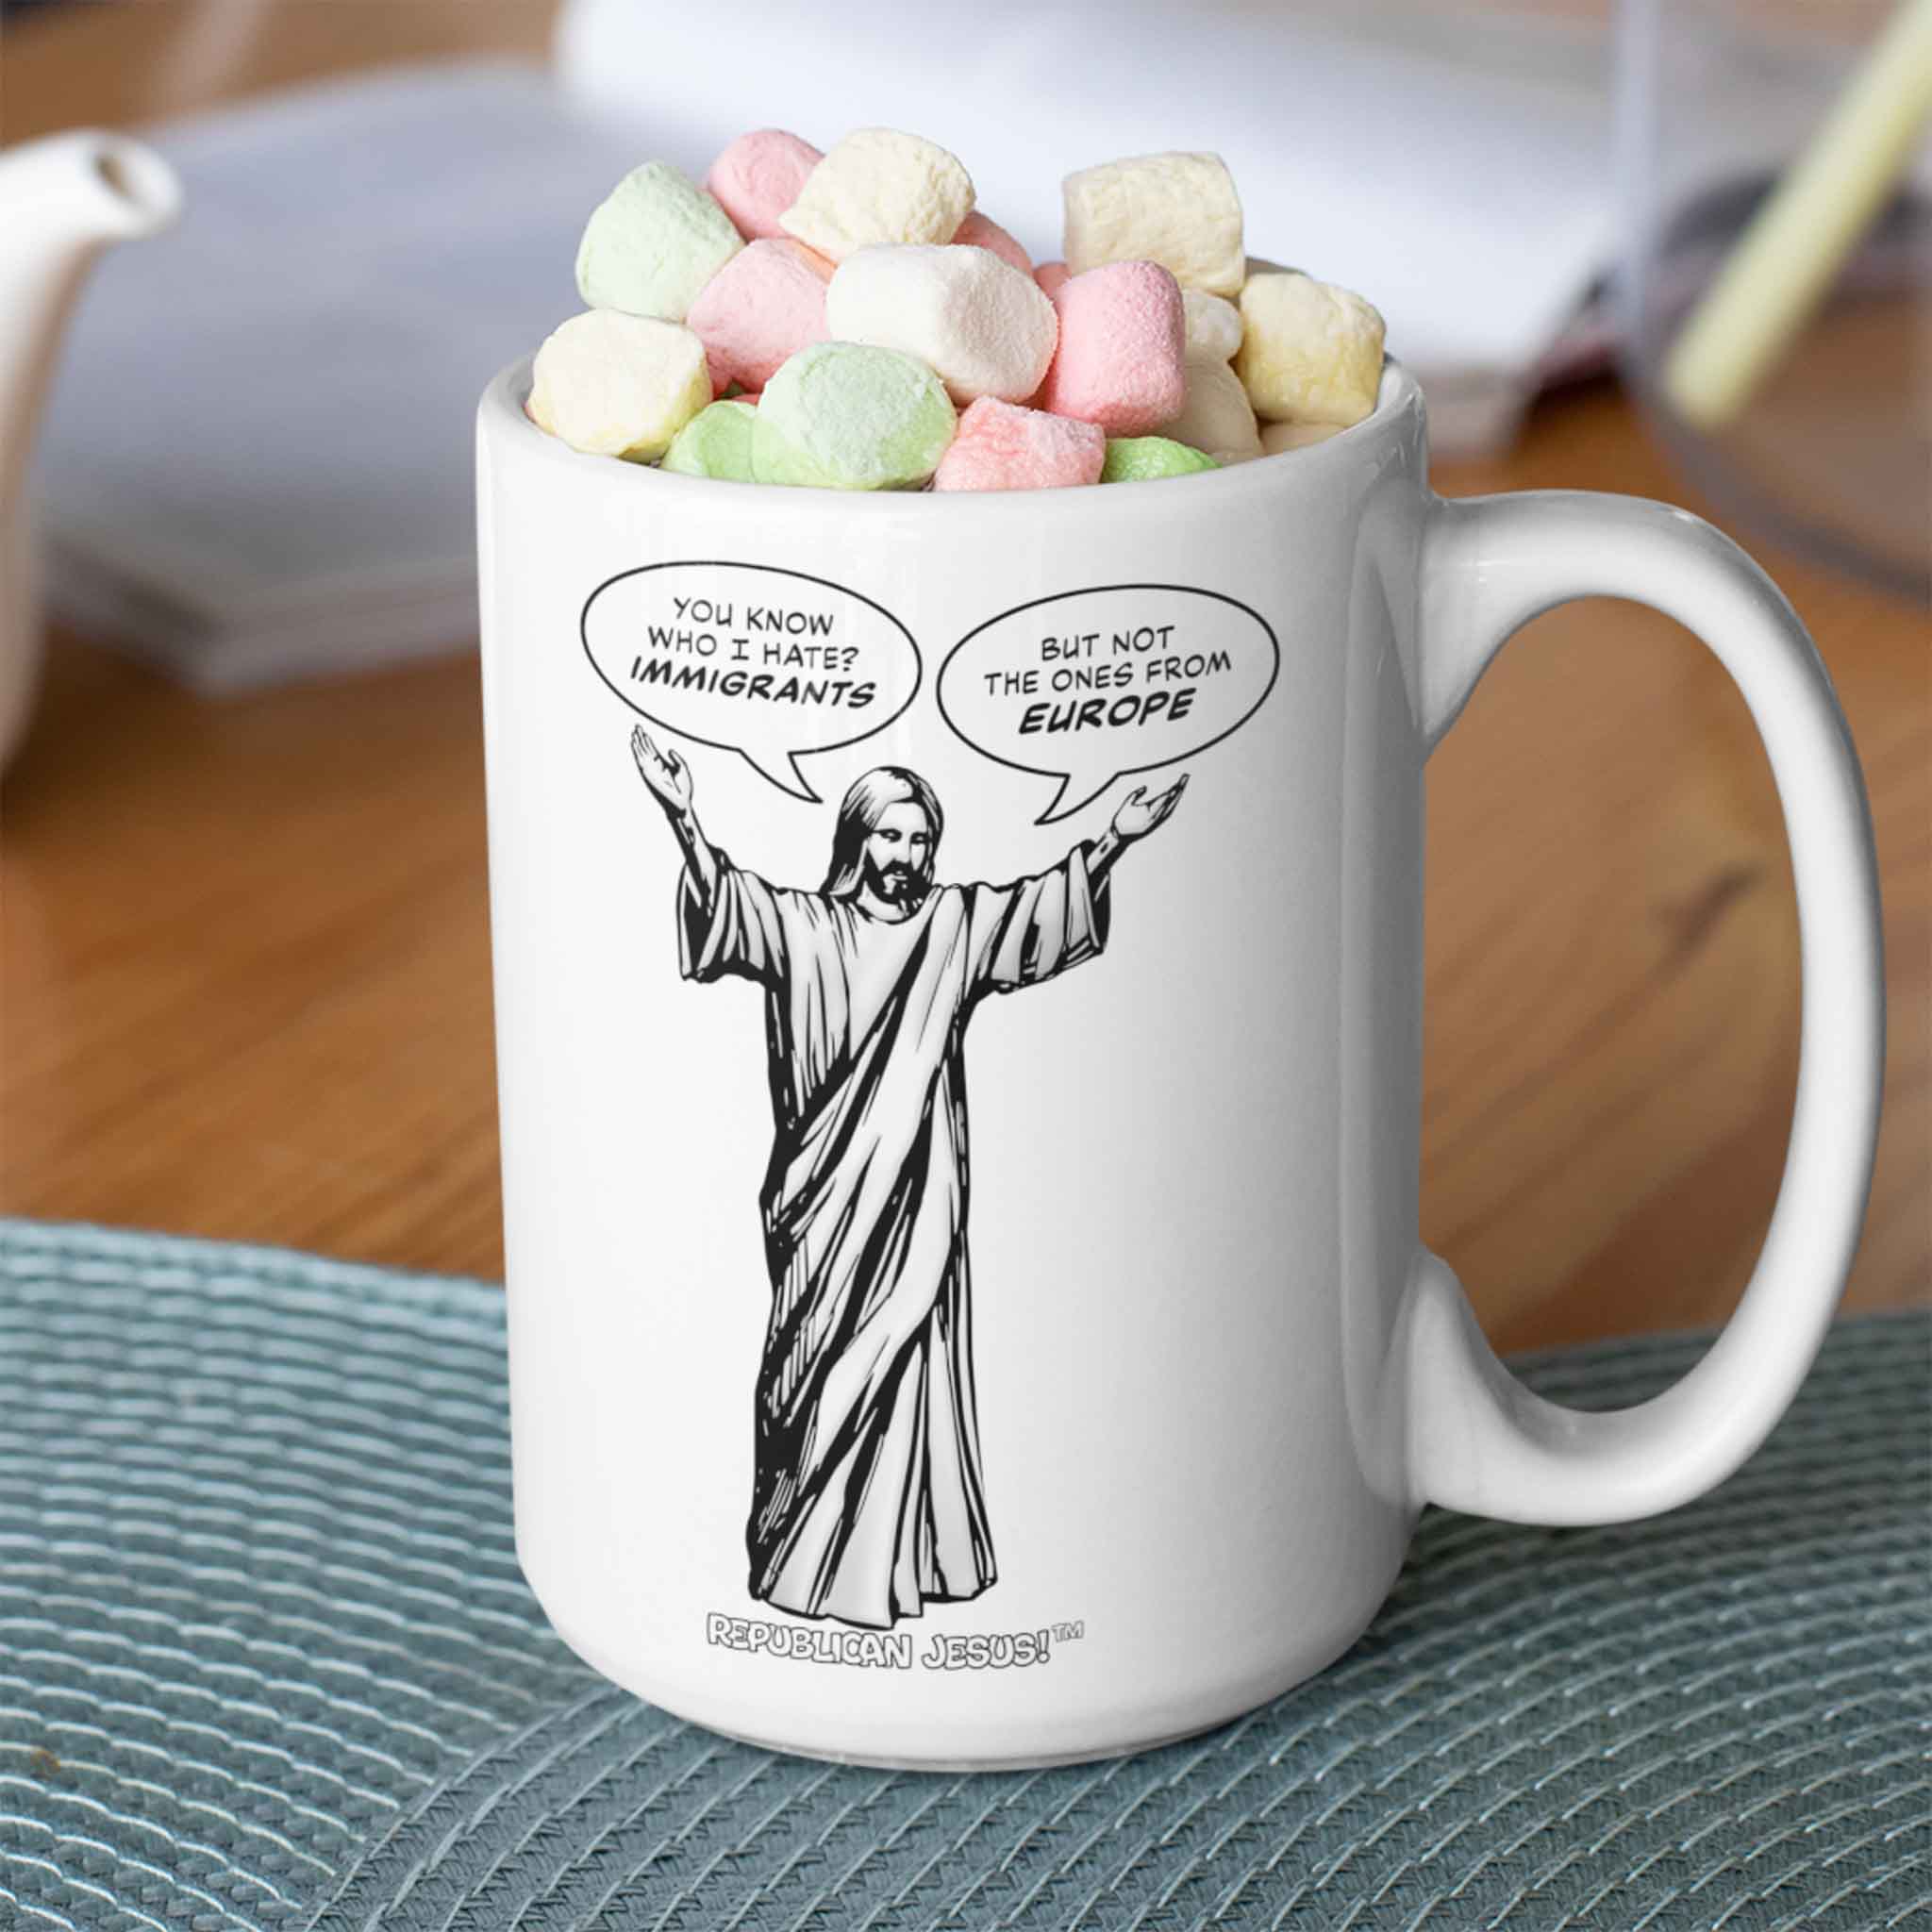 Republican Jesus!™ — "Immigrants" 15oz mug